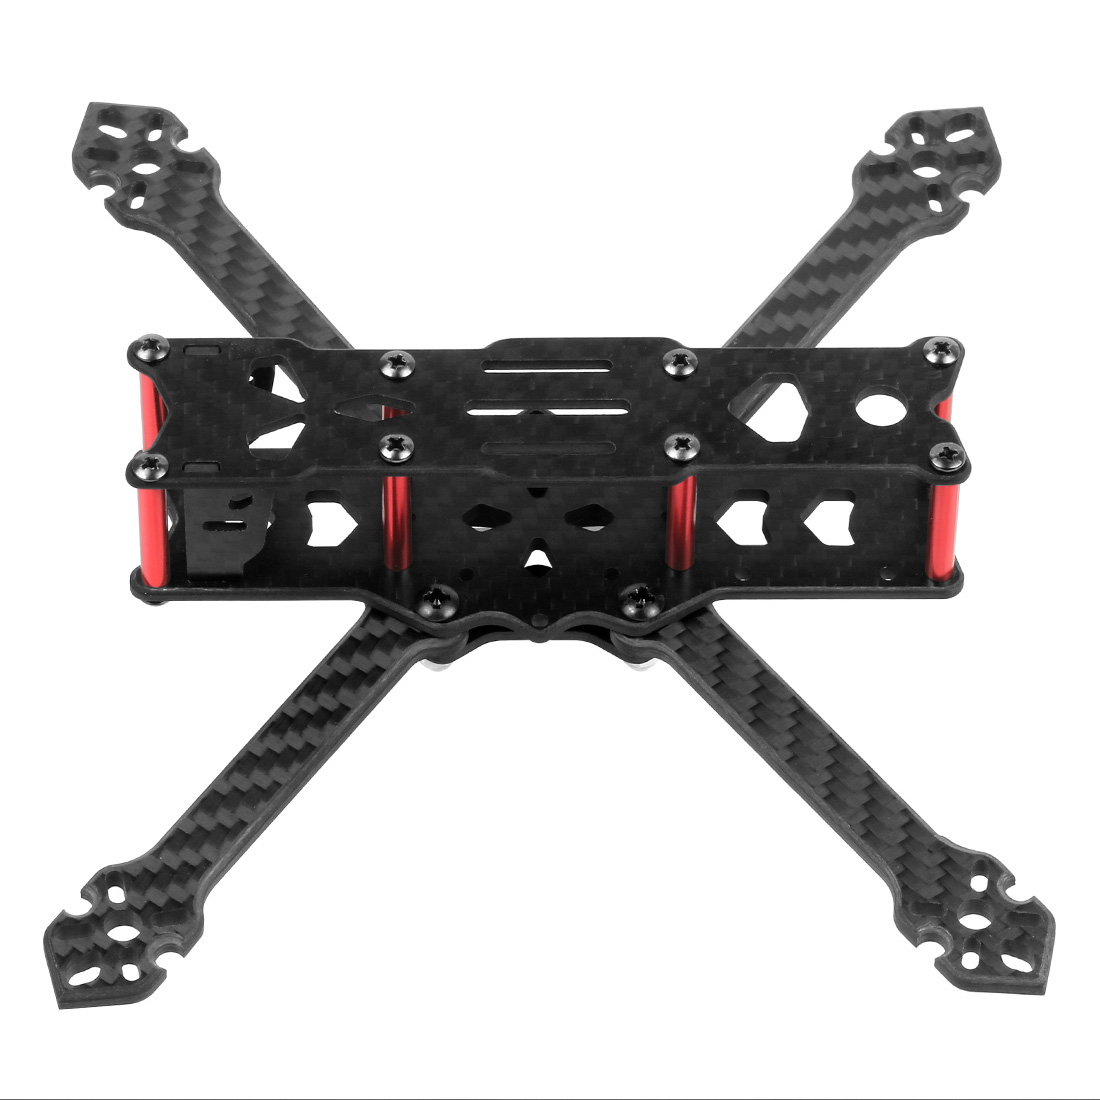 JMT F4 X1 175mm FPV Drone Frame Kit Carbon Fiber Quadcopter Rack for DIY Drone